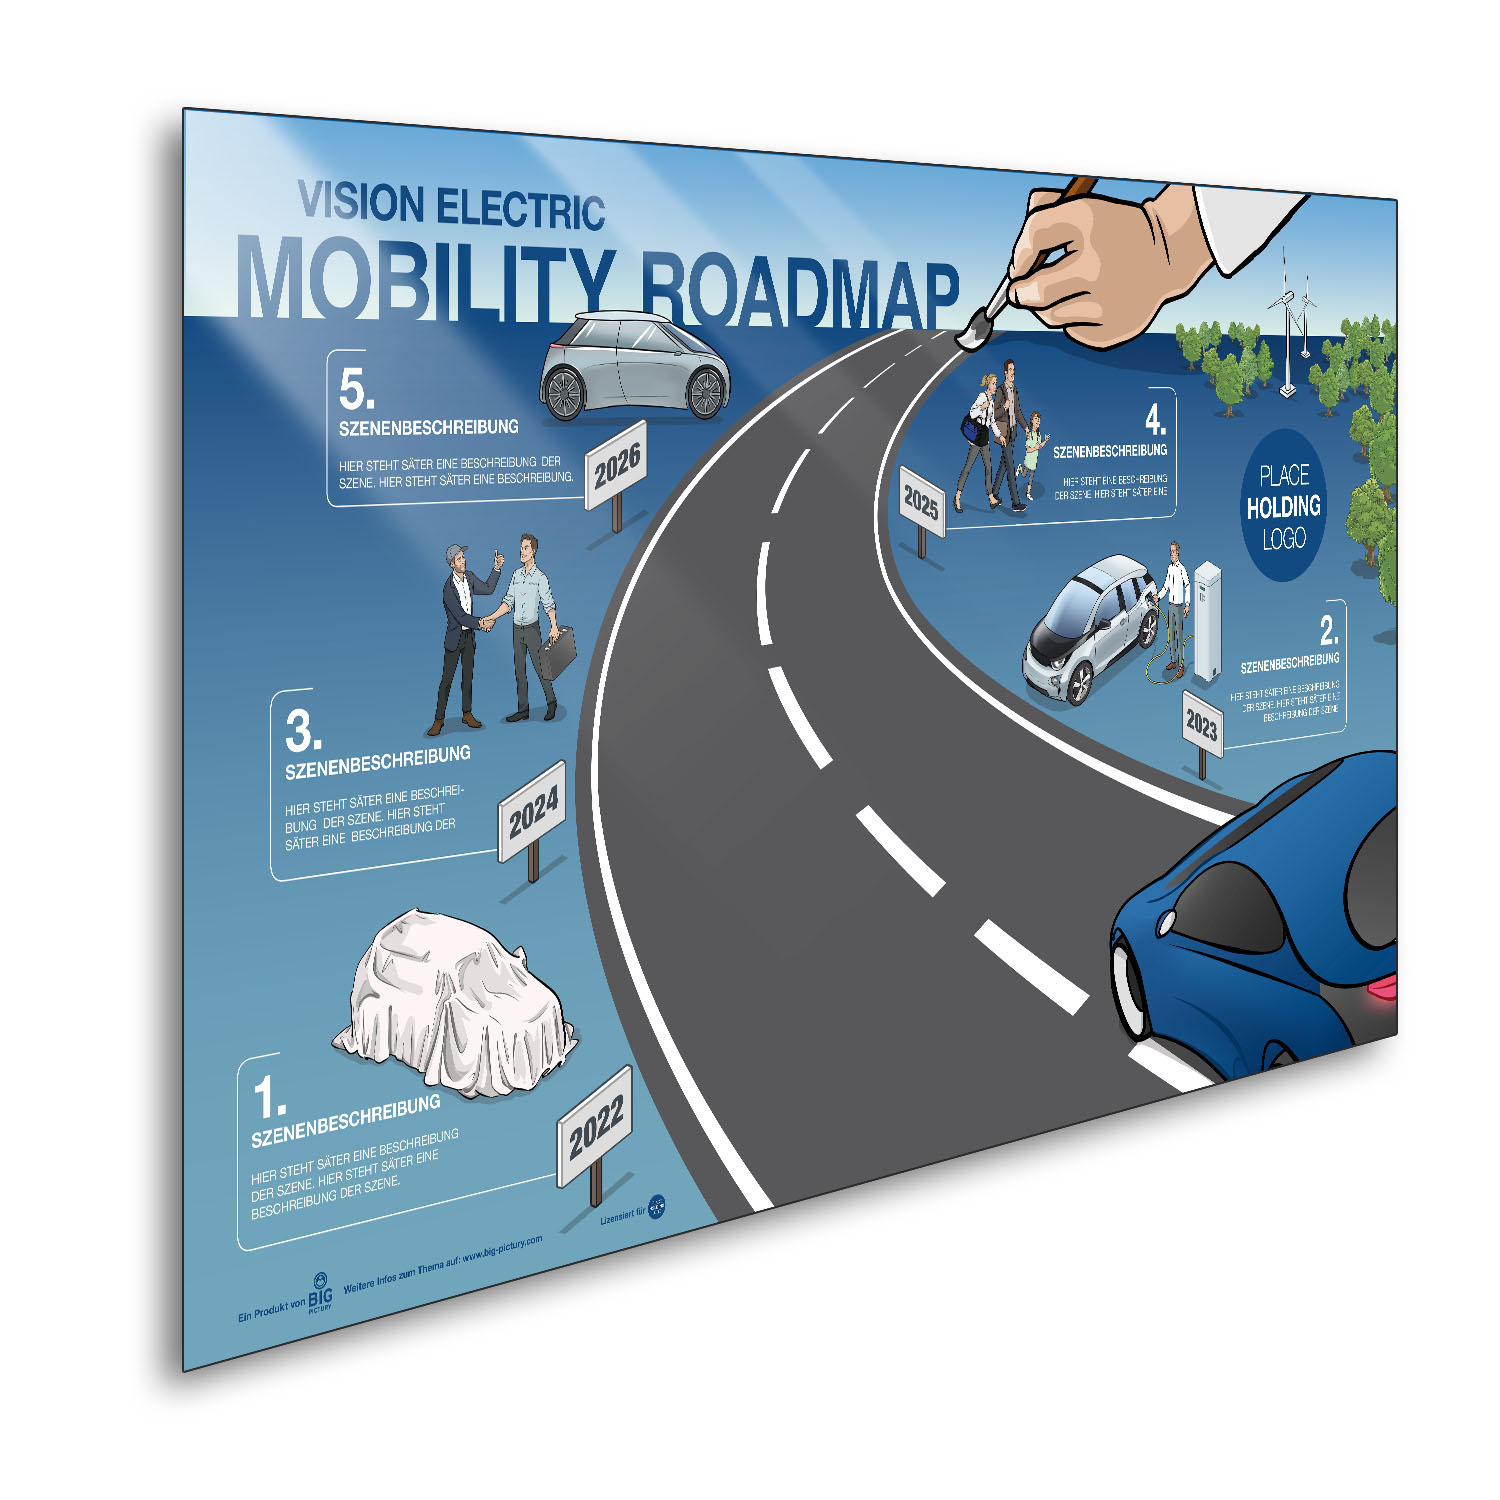 Automobilität "Mobility Roadmap"